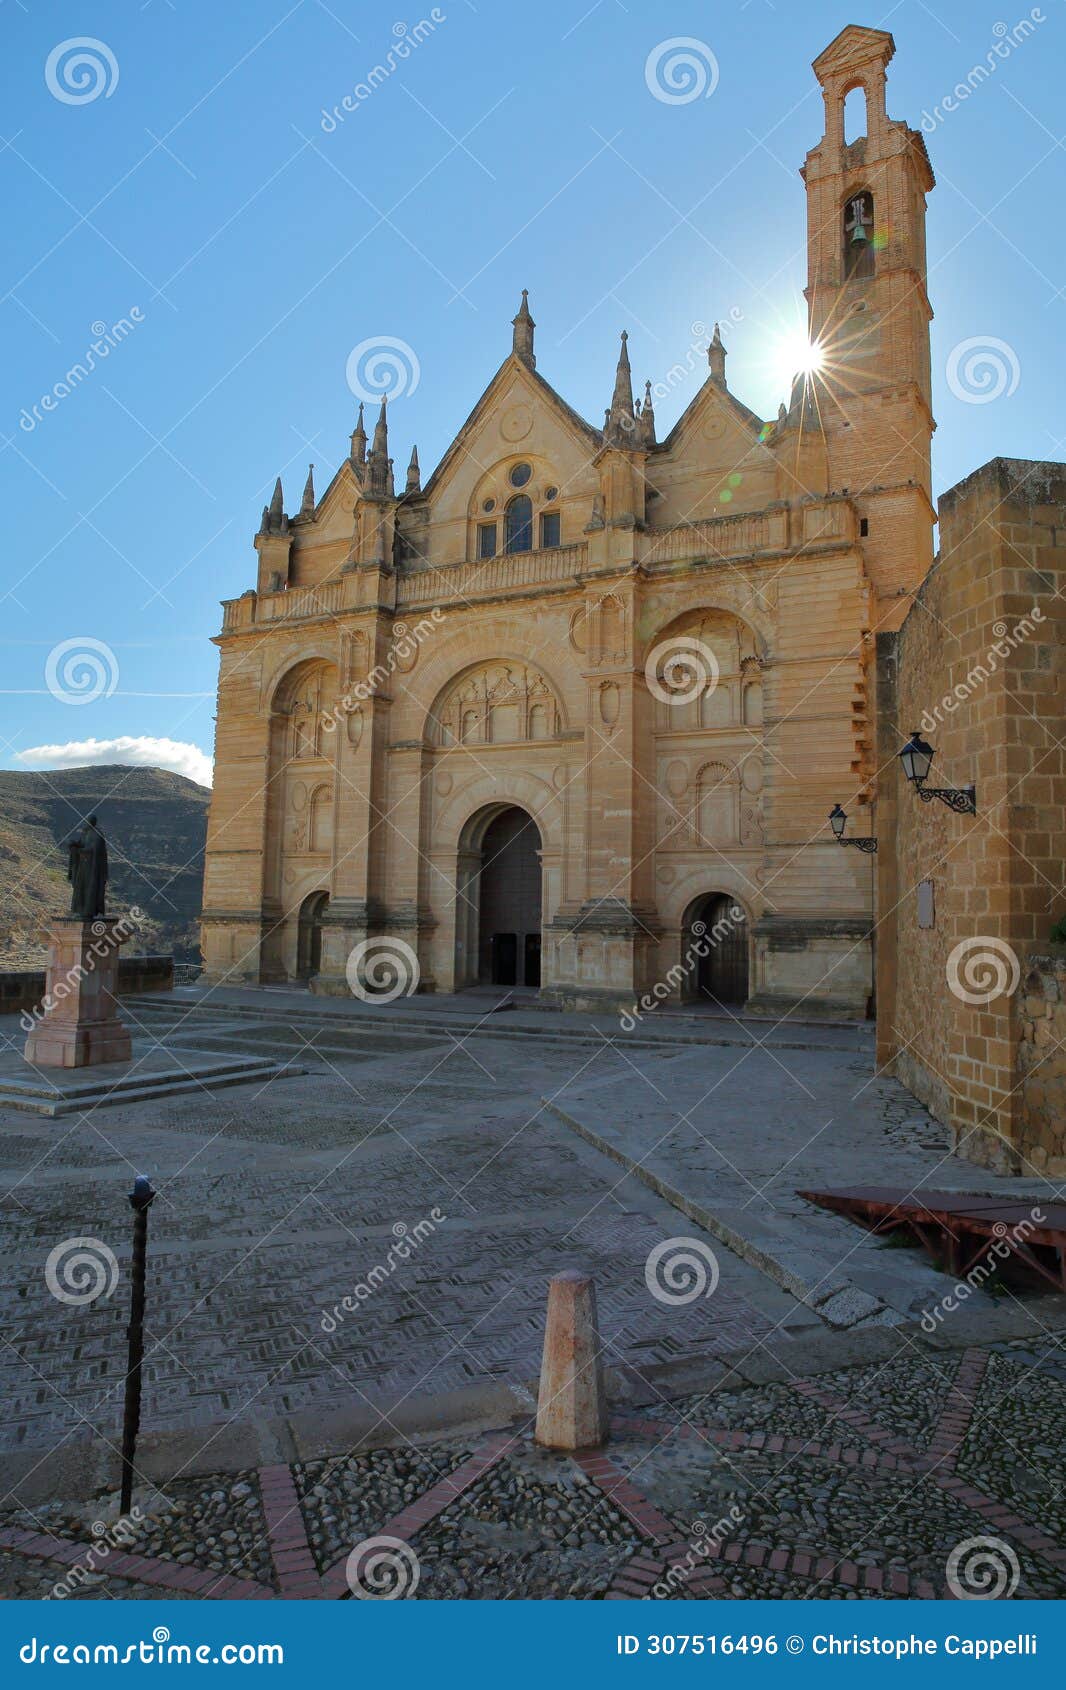 the impressive renaissance facade of the 15 century church colegiata de santa maria la mayor